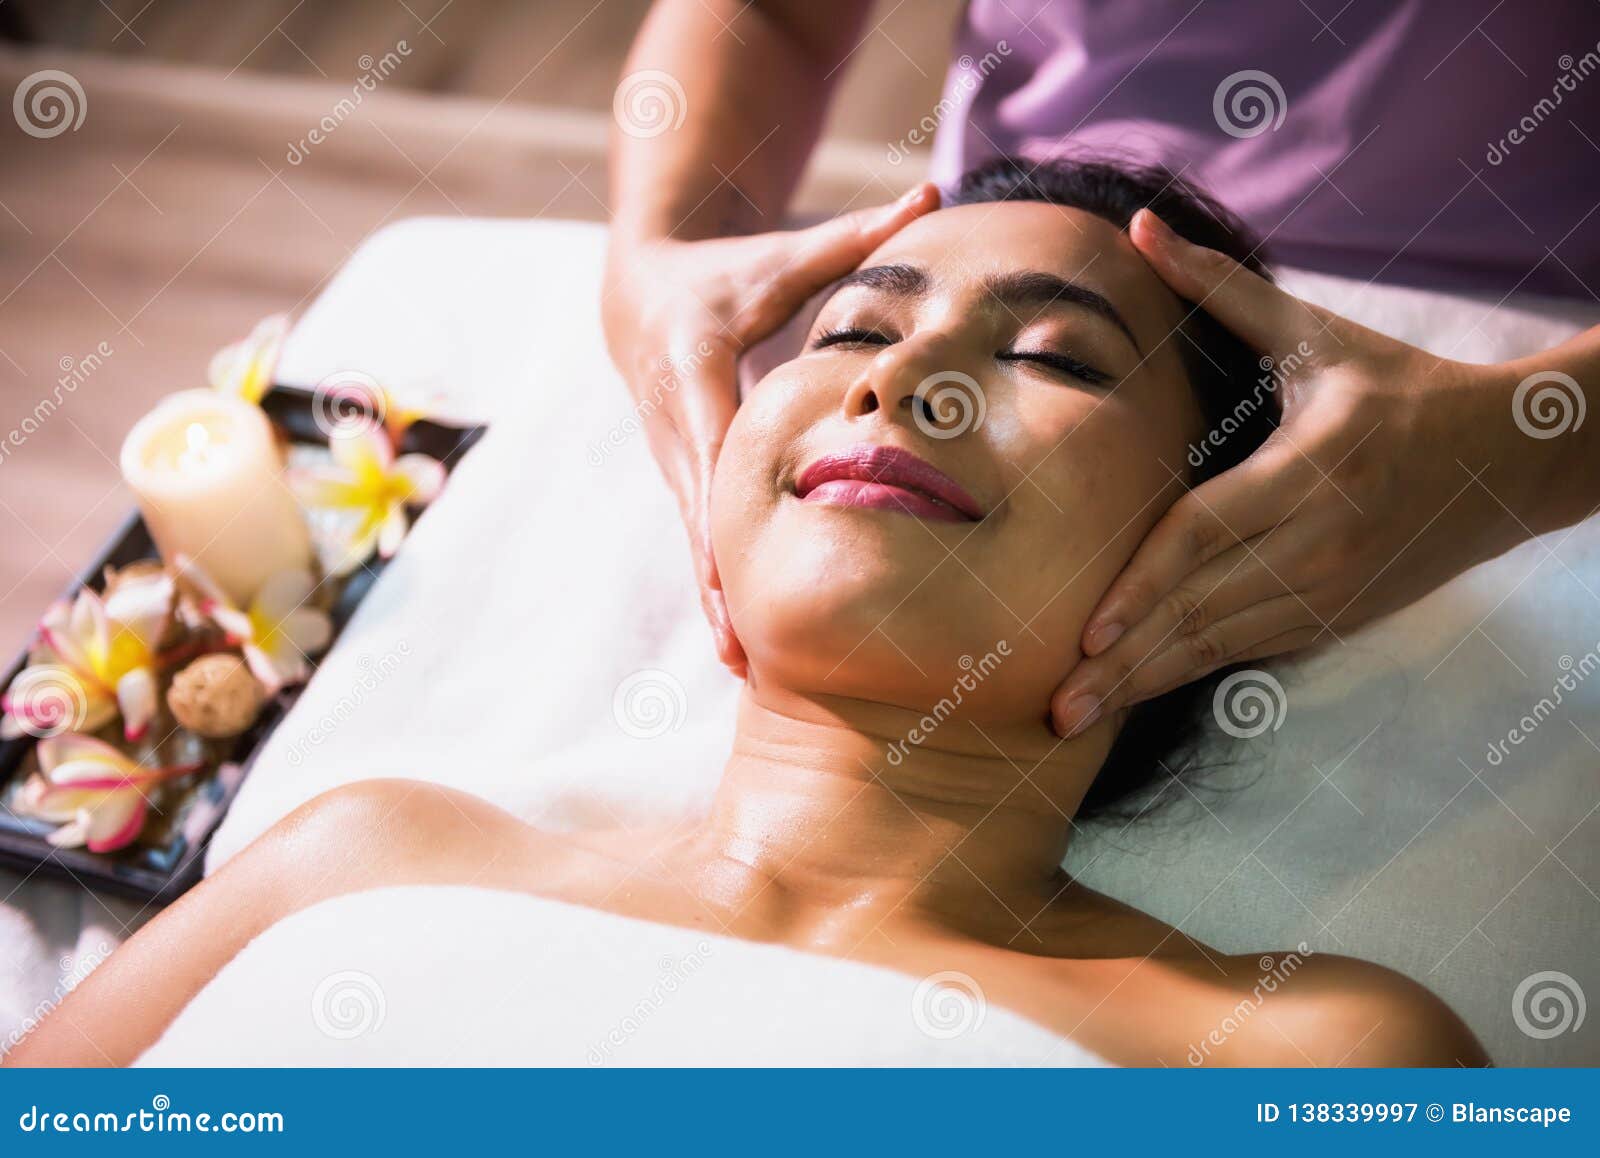 Thai girl oil massage